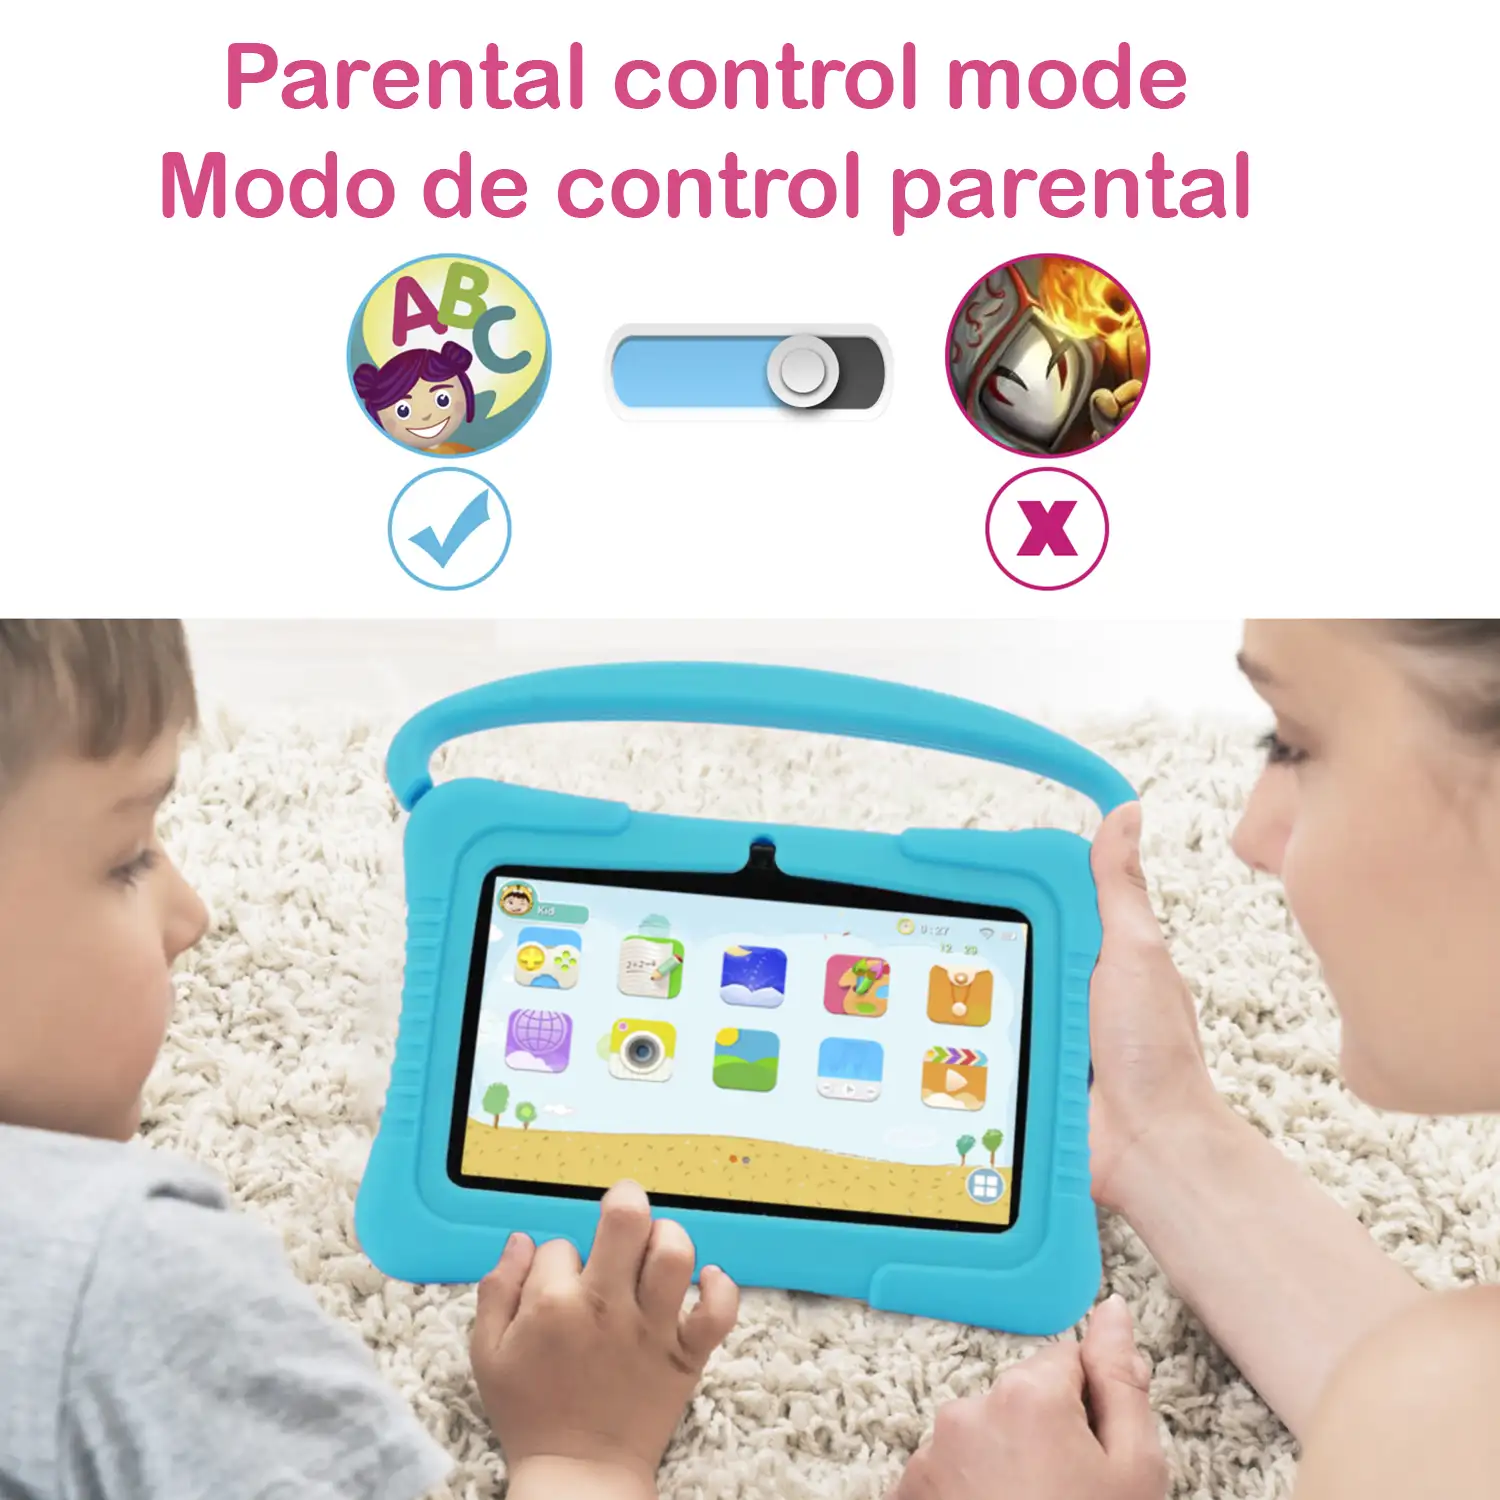 Tablet Infantil de 7 pulgadas Android Go 10 Quad Core, WiFi, con cámara y funda de silicona con asa y soporte. Control parental fácil.